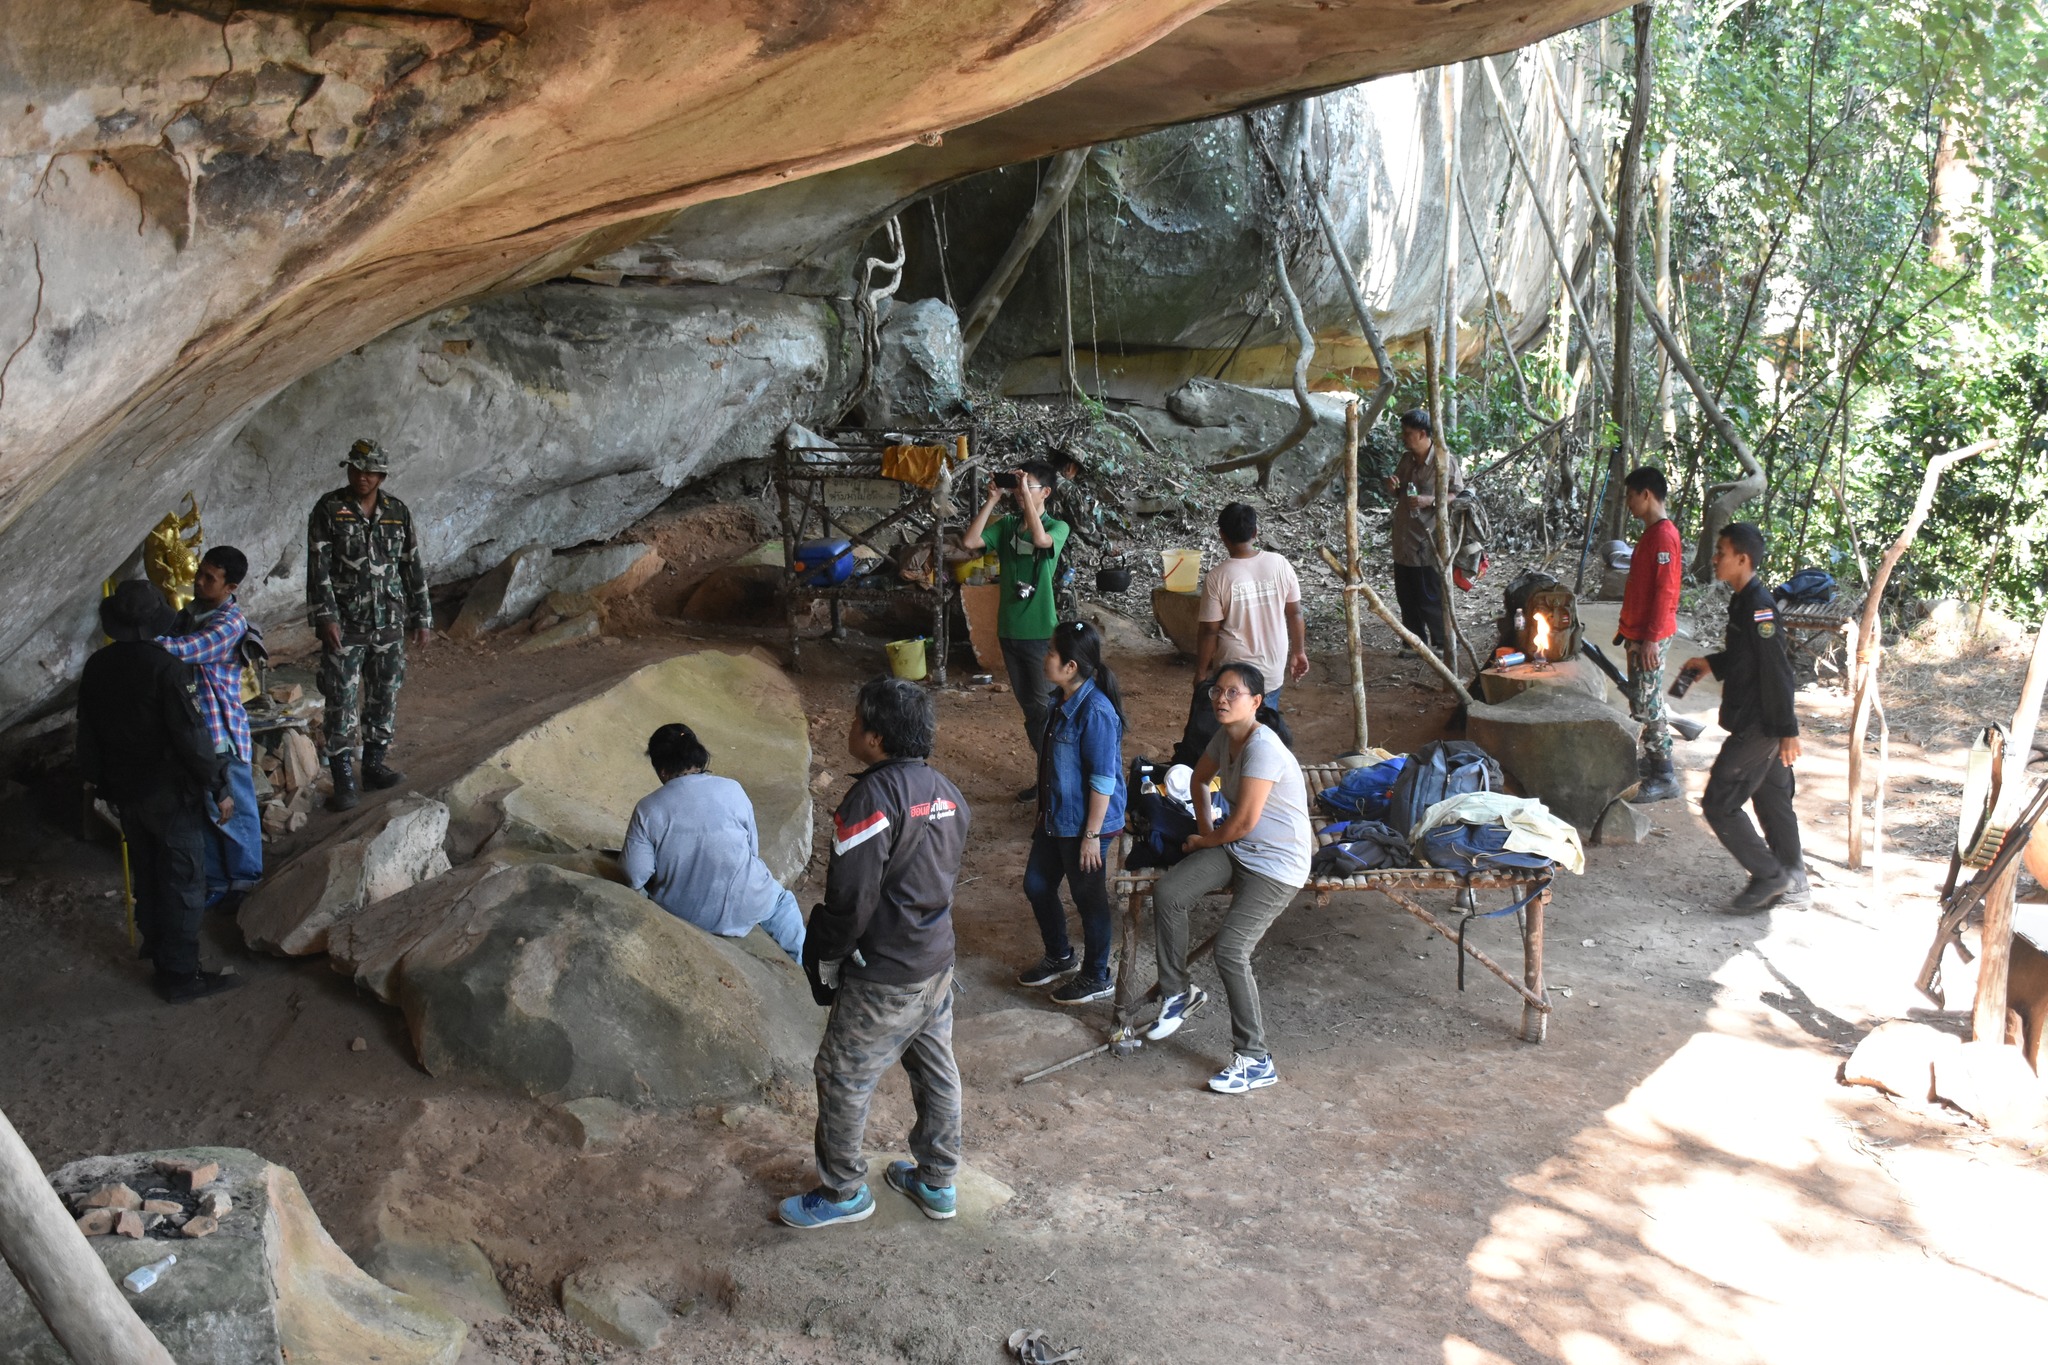 วันที่ 1 มีนาคม 2566 ร่วมกันสำรวจ  ภาพเขียนสีพบใหม่  ณ ถ้ำหินเพิง เทือกเขาโซ่